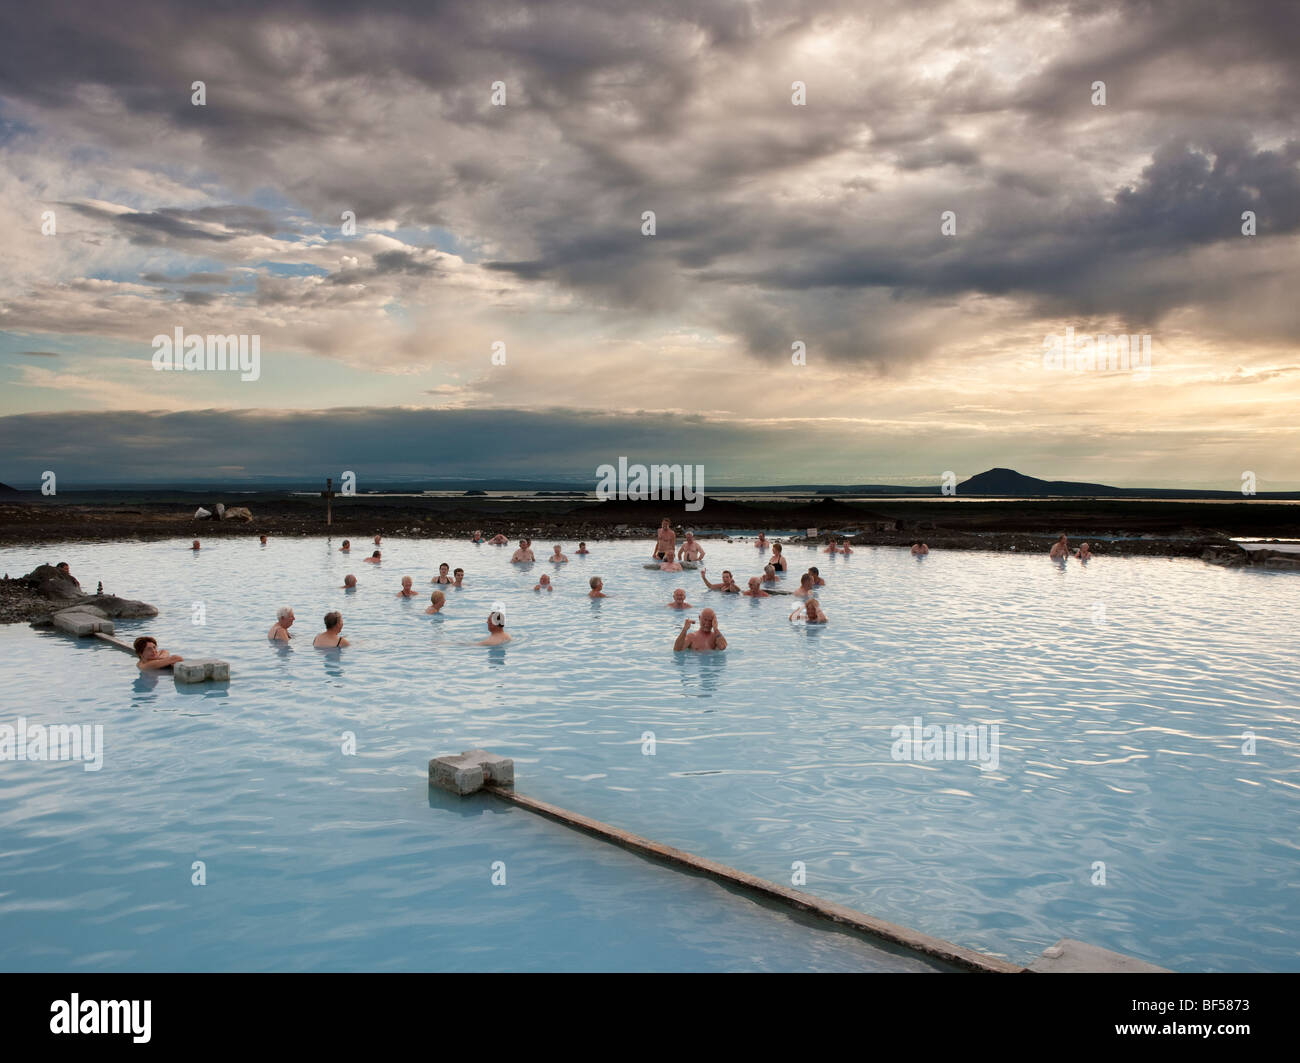 Bains naturels de Myvatn, Hot Springs (géothermie), l'Islande Myvatn Banque D'Images